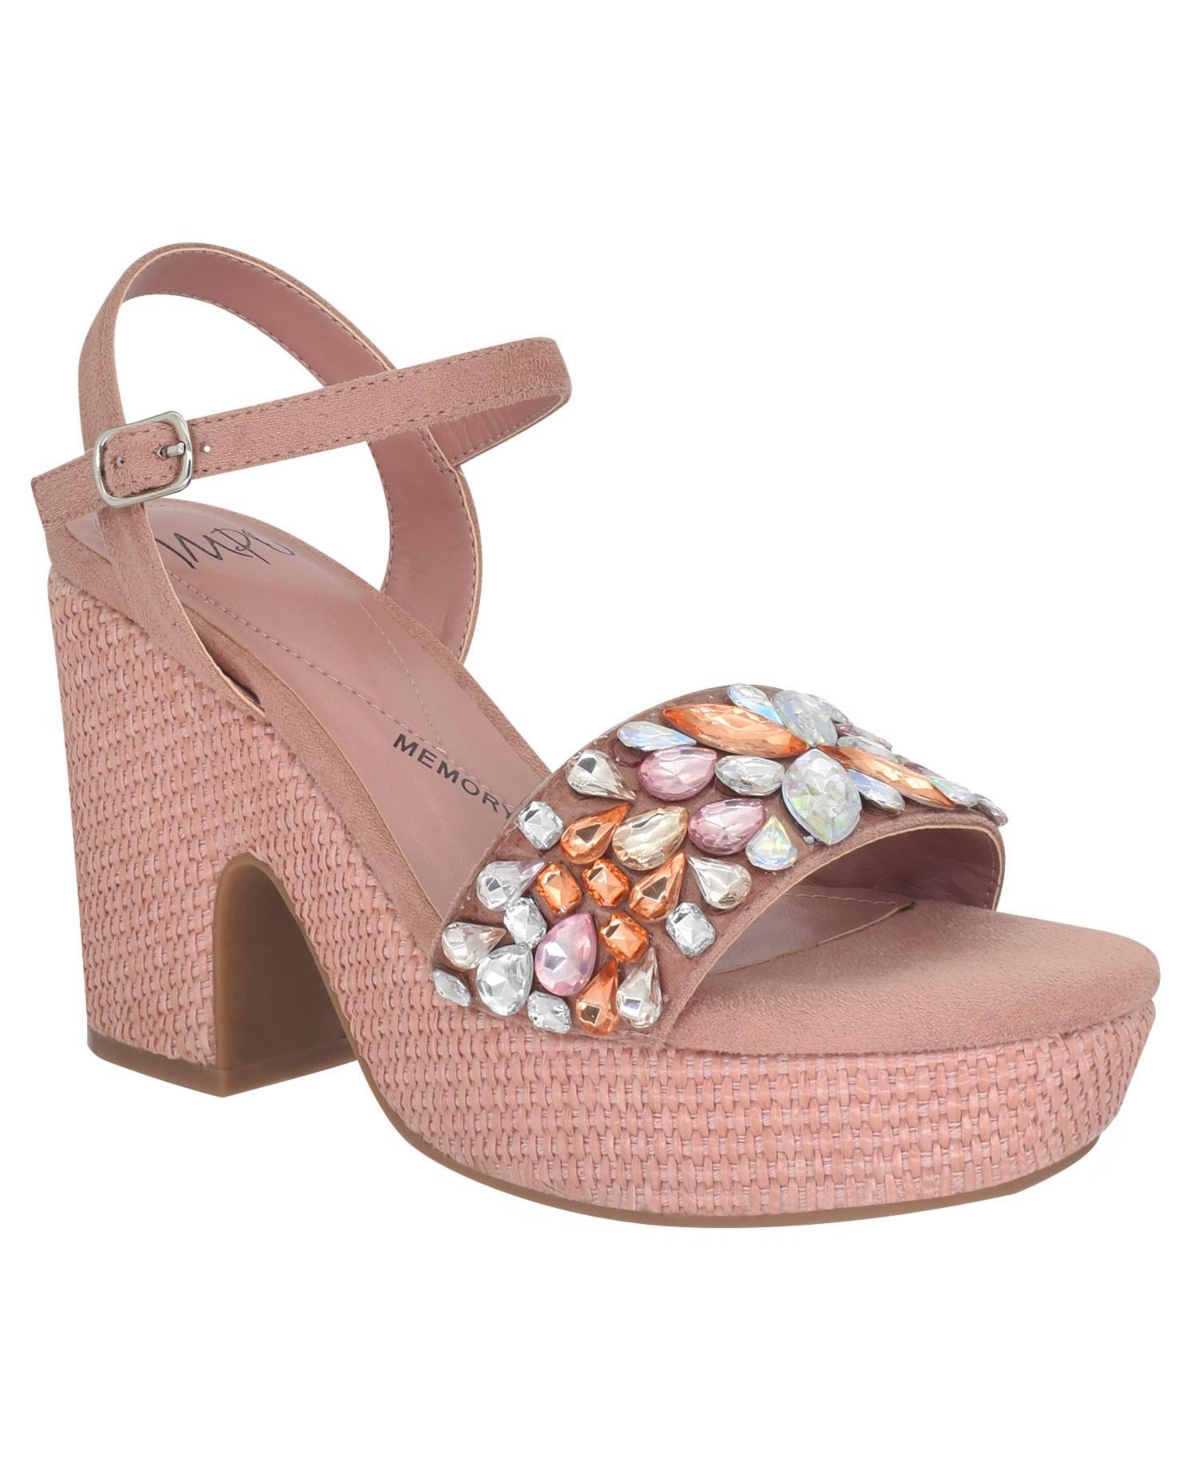 Women's Odely Embellished Platform Sandals - Clay Rose